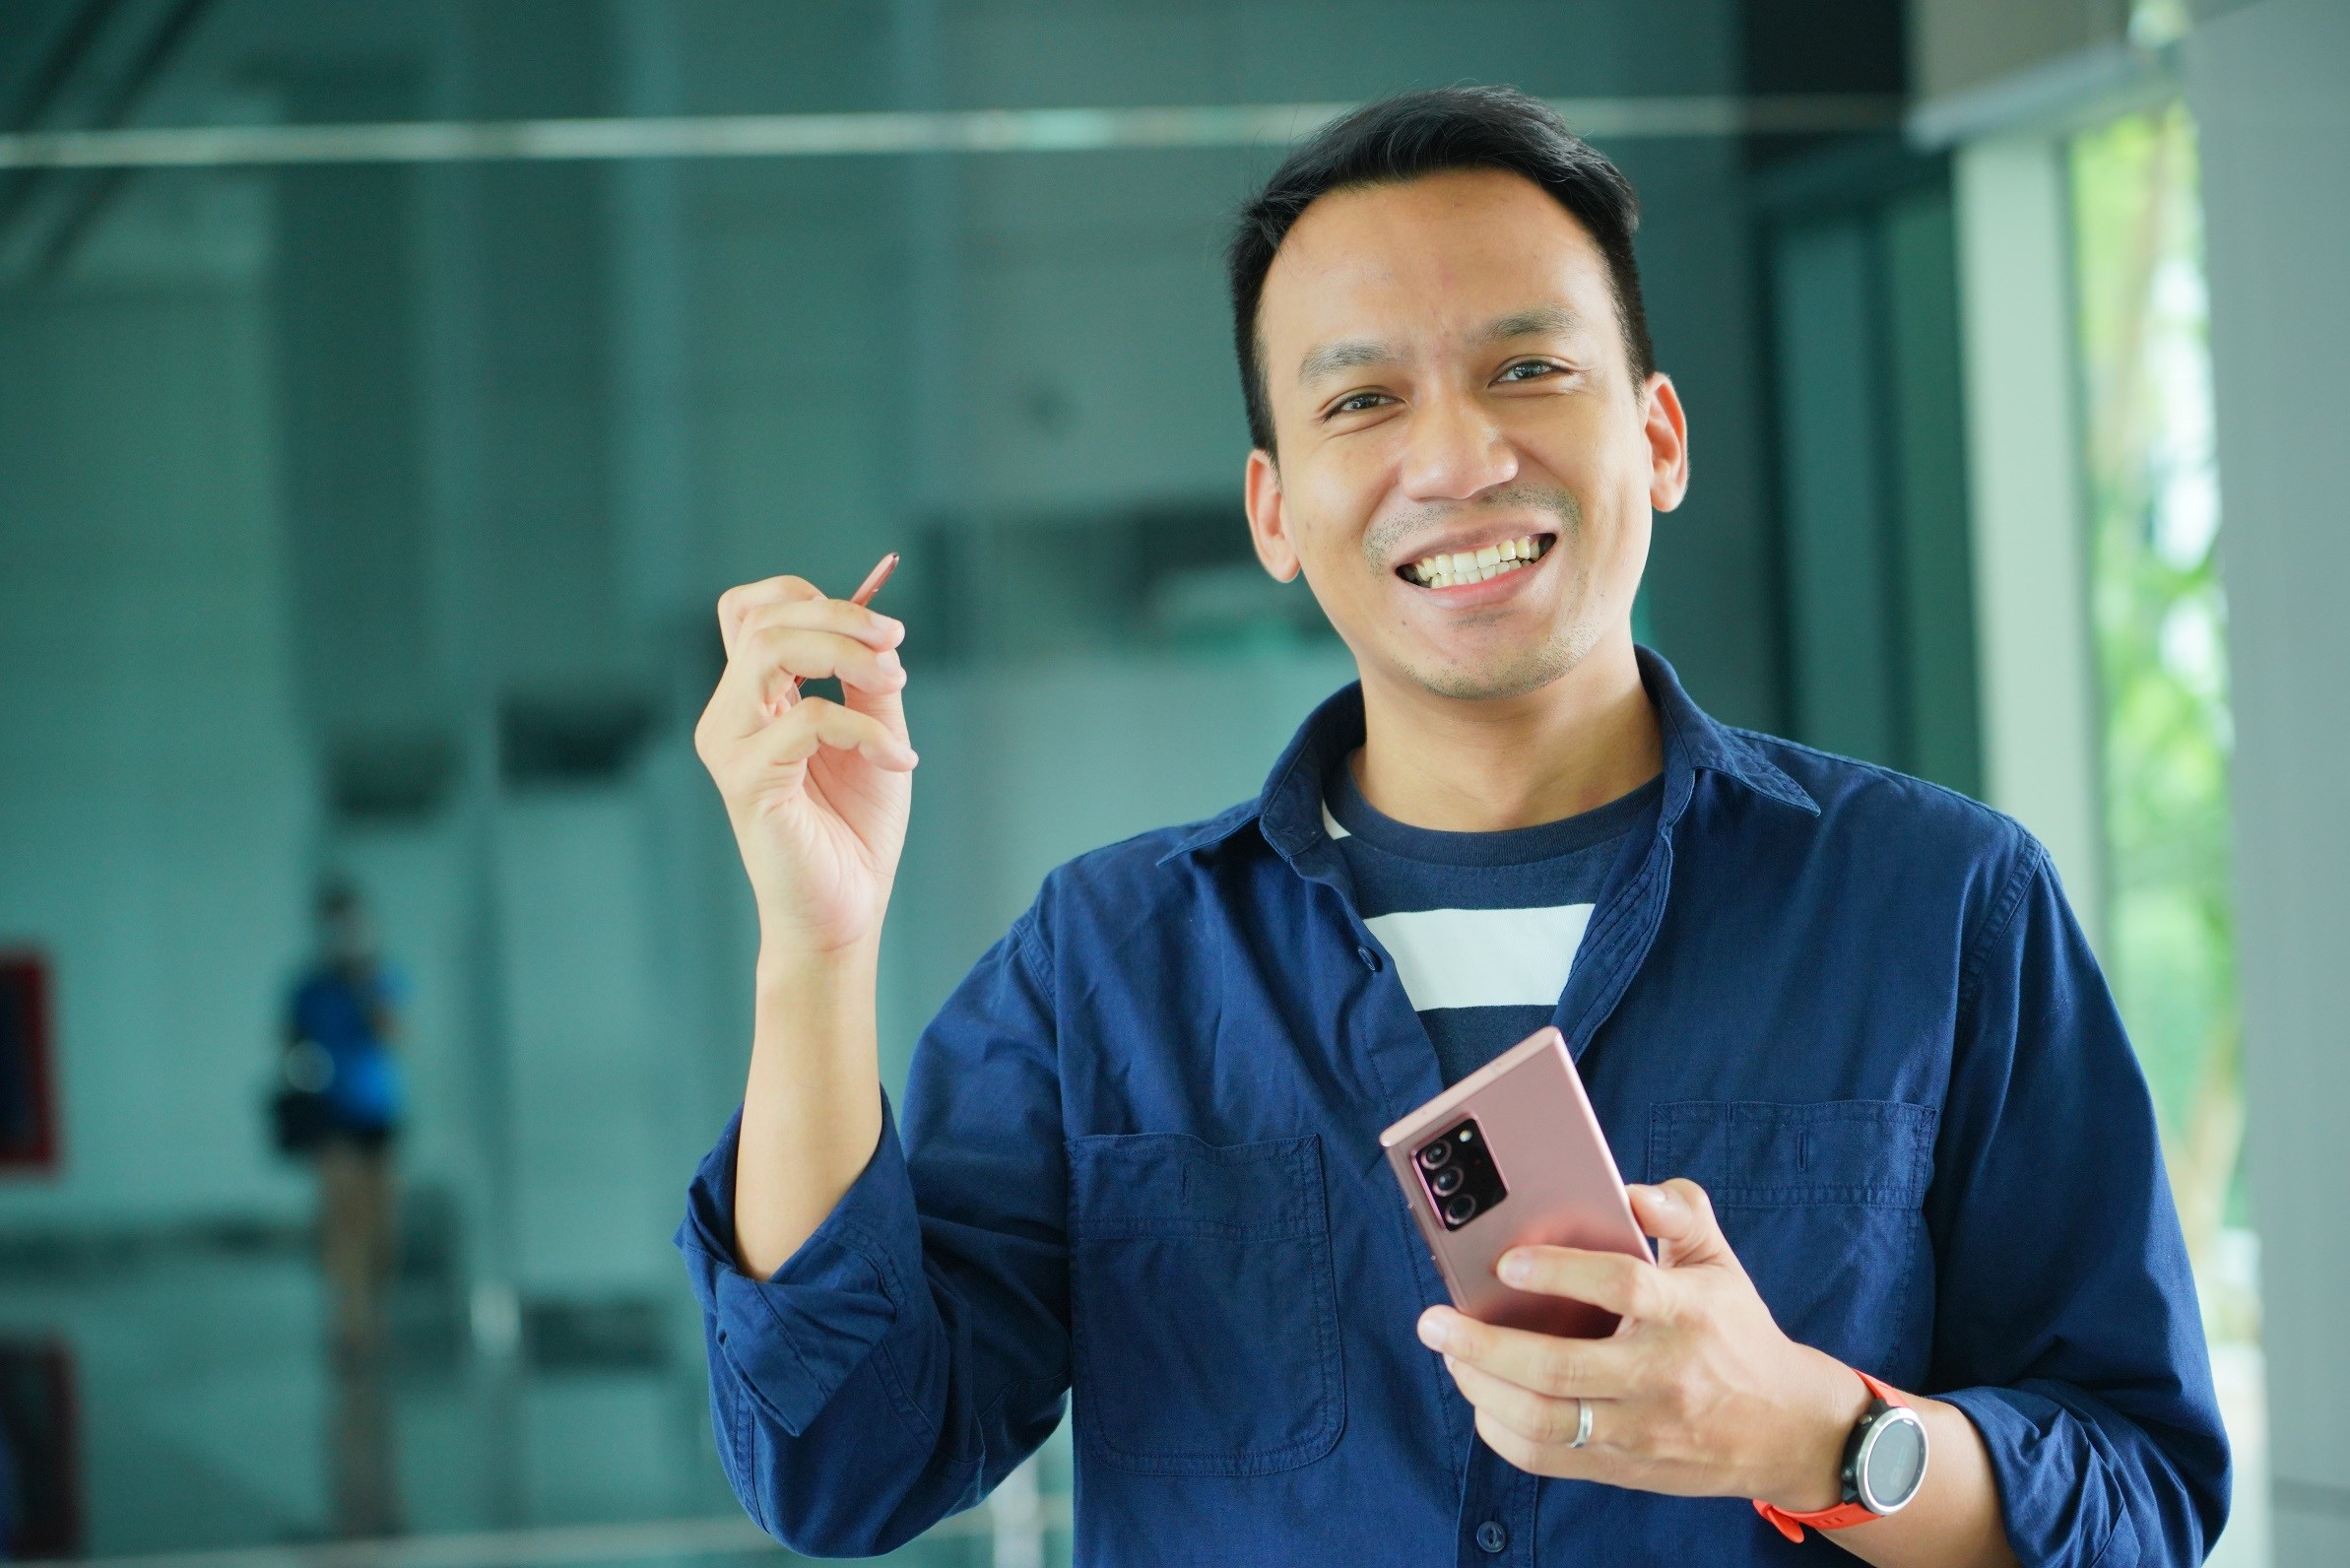 โน้ตแฟนโดนใจ! ยกให้ S Pen คือฟีเจอร์ที่ใช่ เผยโฉมคนกลุ่มแรกของไทยที่ได้เป็นเจ้าของซัมซุง Galaxy Note20 Series